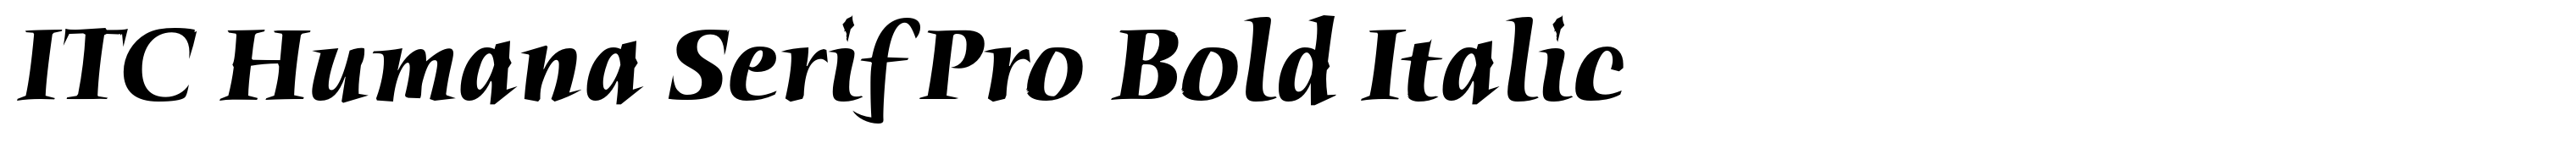 ITC Humana Serif Pro Bold Italic